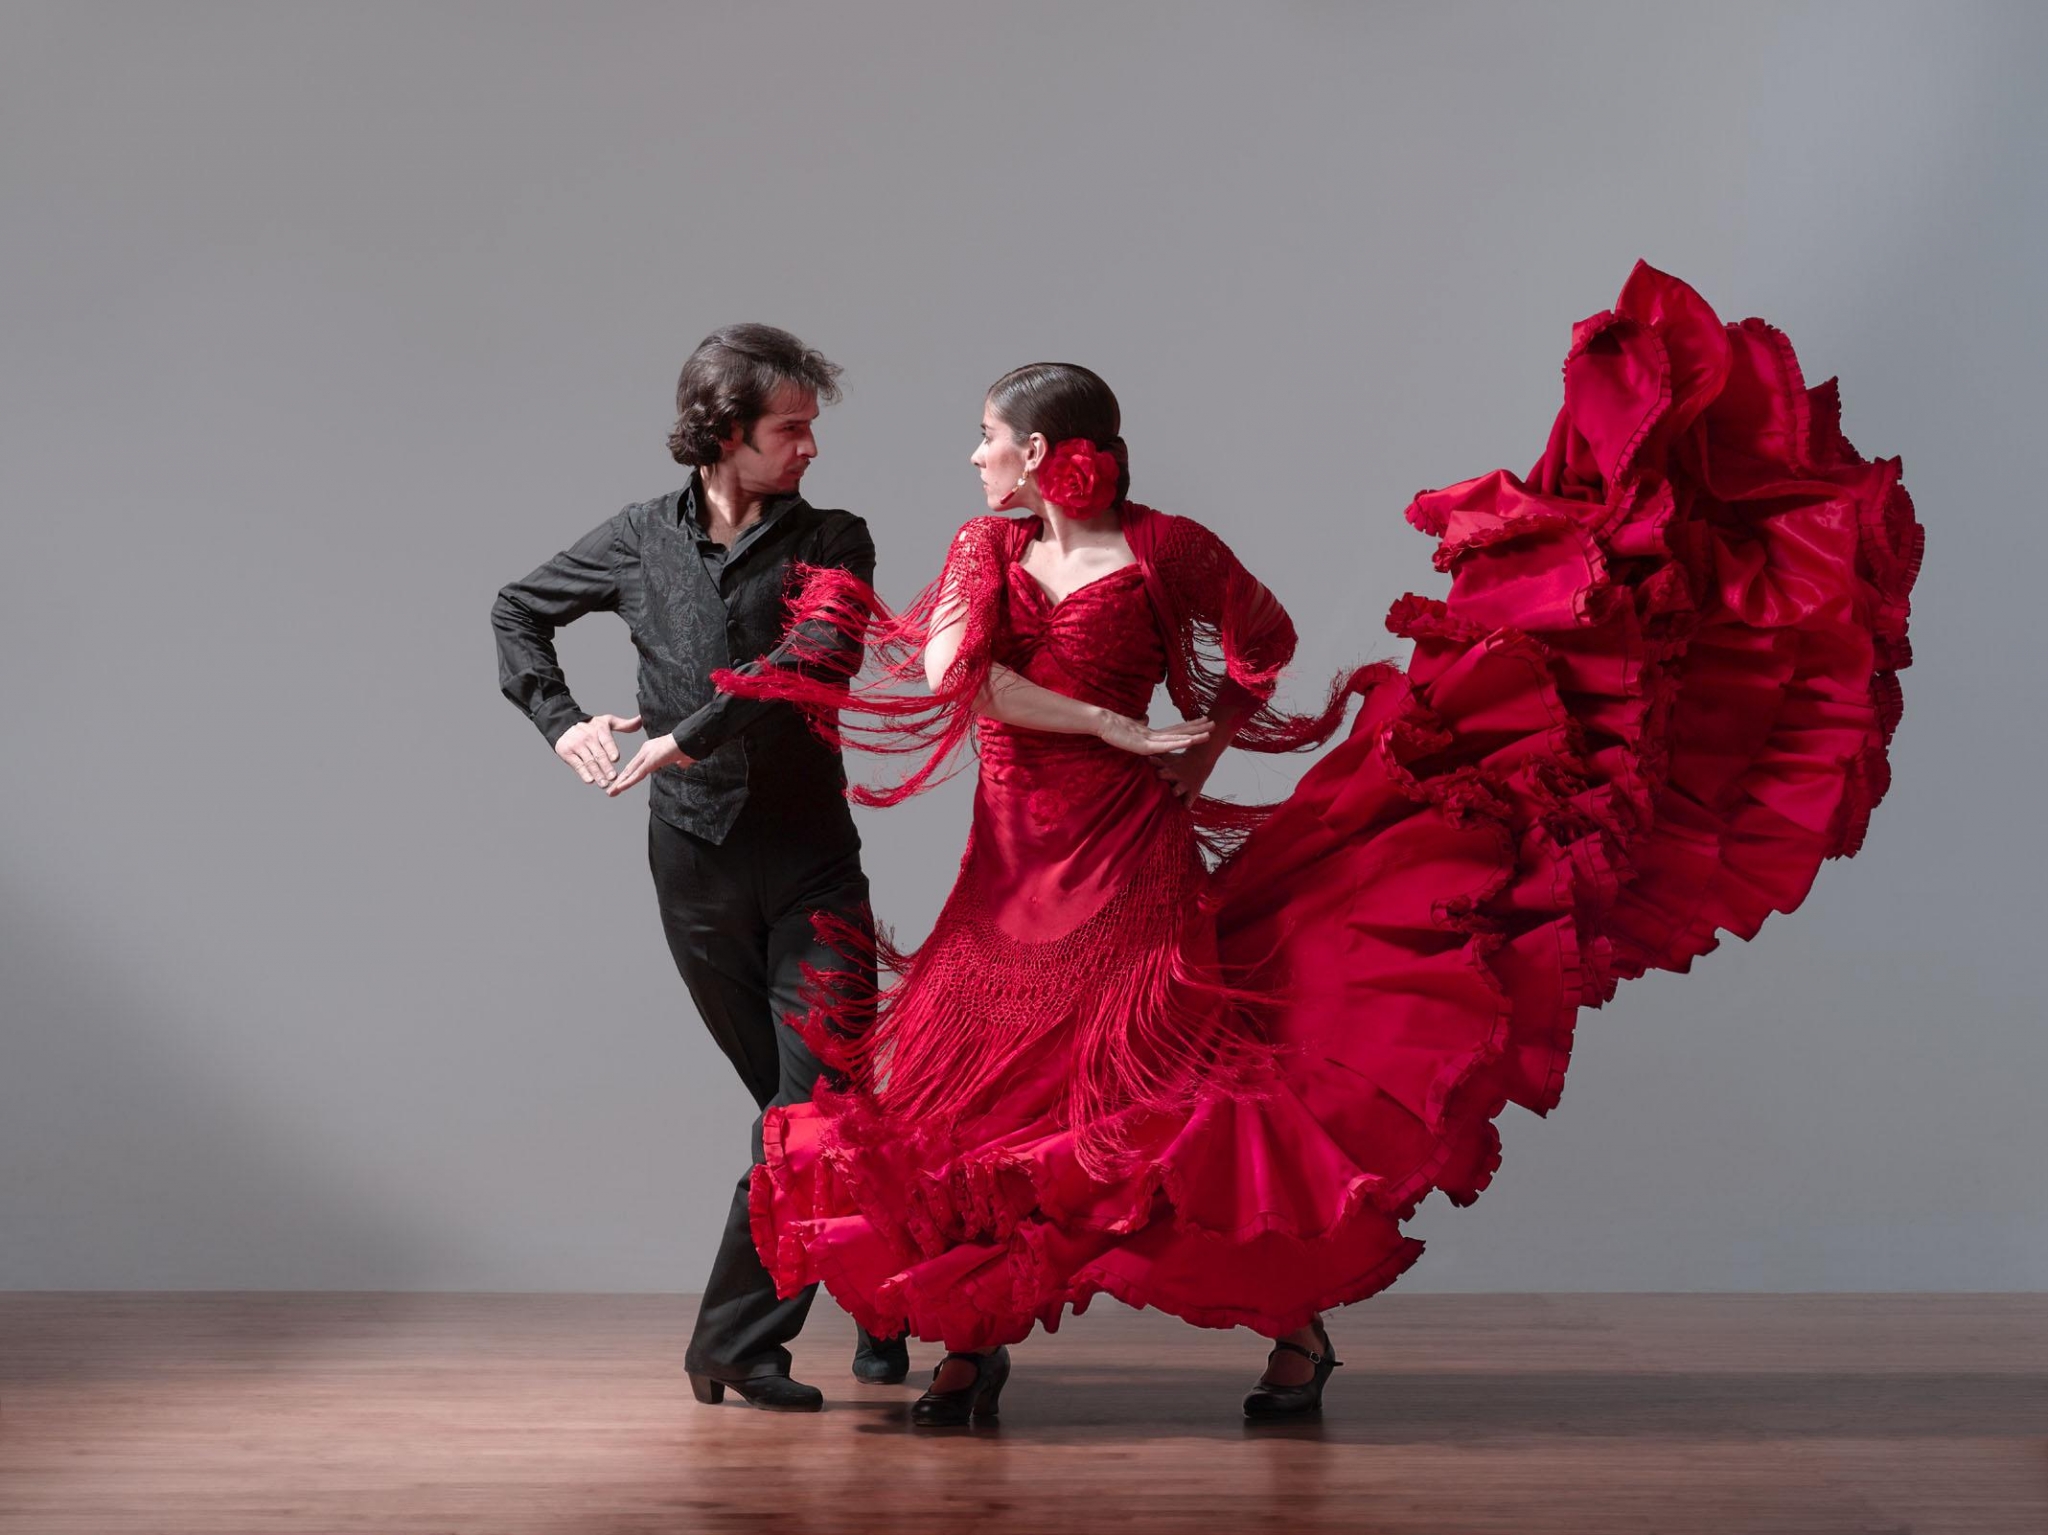 Flamenco, Испания, традиции Испании, обучение фламенко